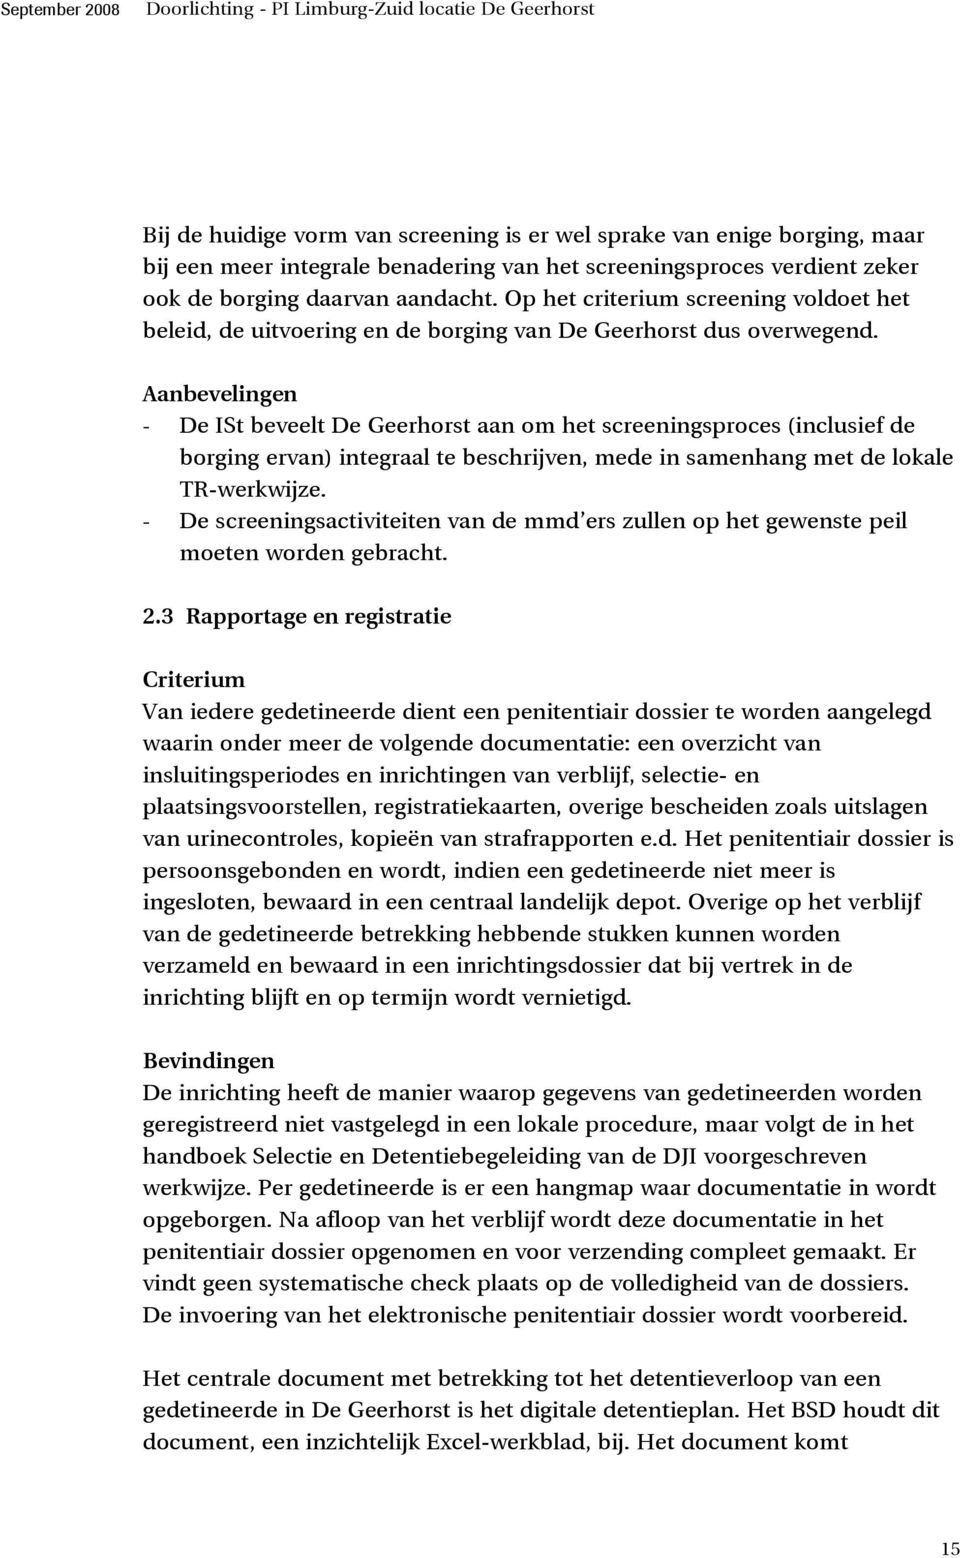 Aanbevelingen - De ISt beveelt De Geerhorst aan om het screeningsproces (inclusief de borging ervan) integraal te beschrijven, mede in samenhang met de lokale TR-werkwijze.